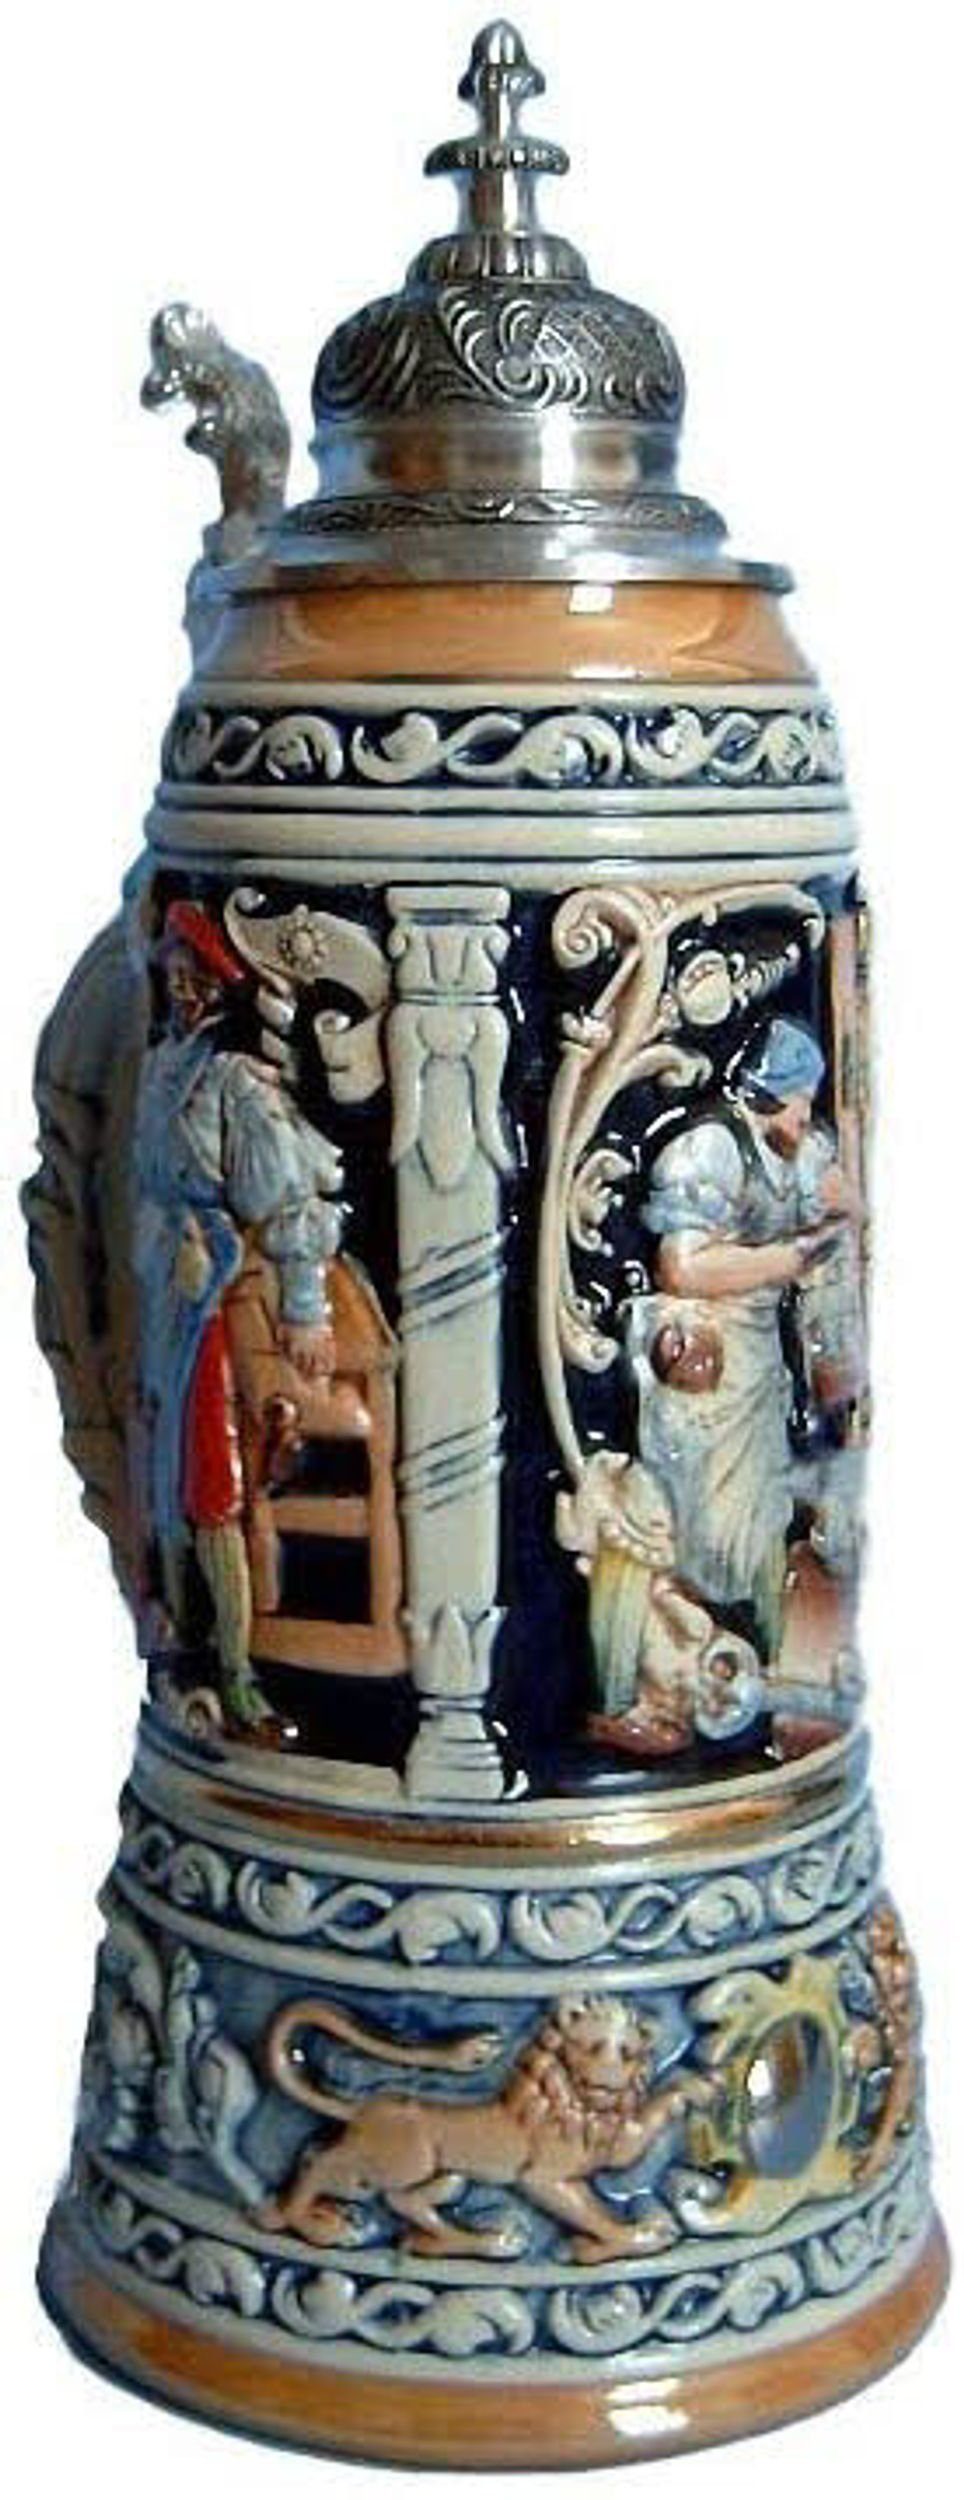 KING Bierkrug König Jahreskrug 2002 1,5L, ceramic